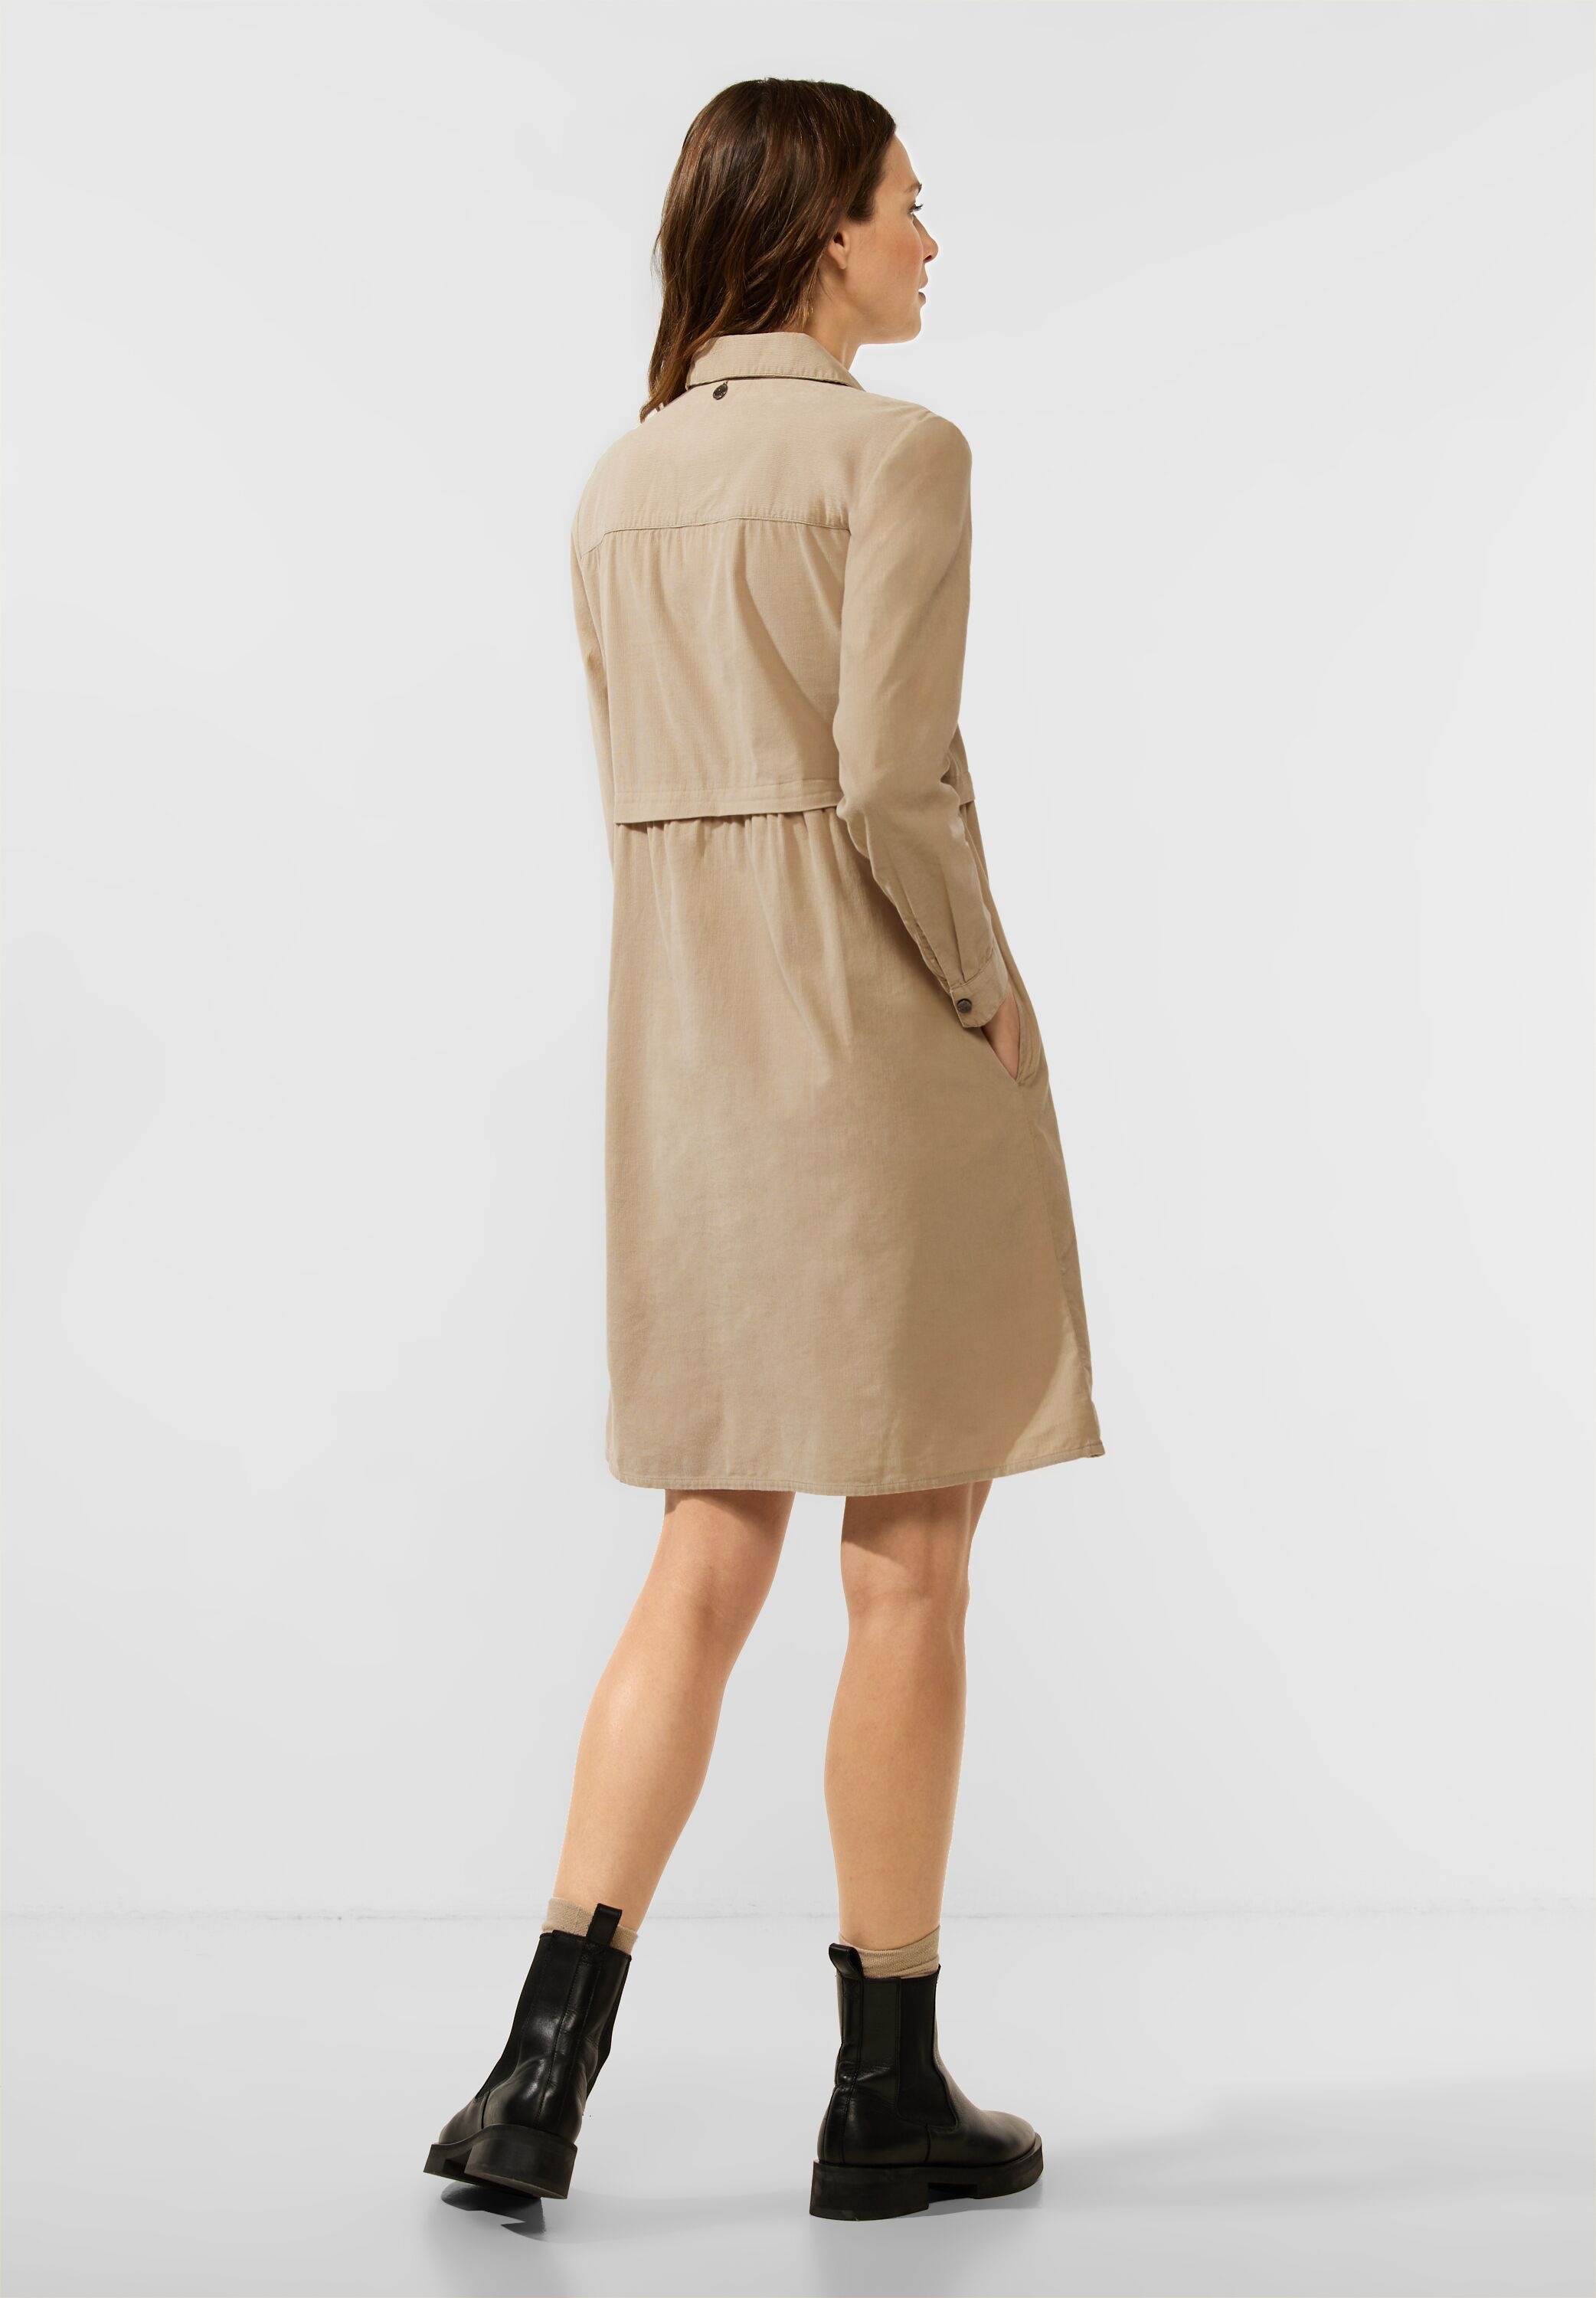 bestellen | ONE online 100% aus Baumwolle Sommerkleid, BAUR STREET